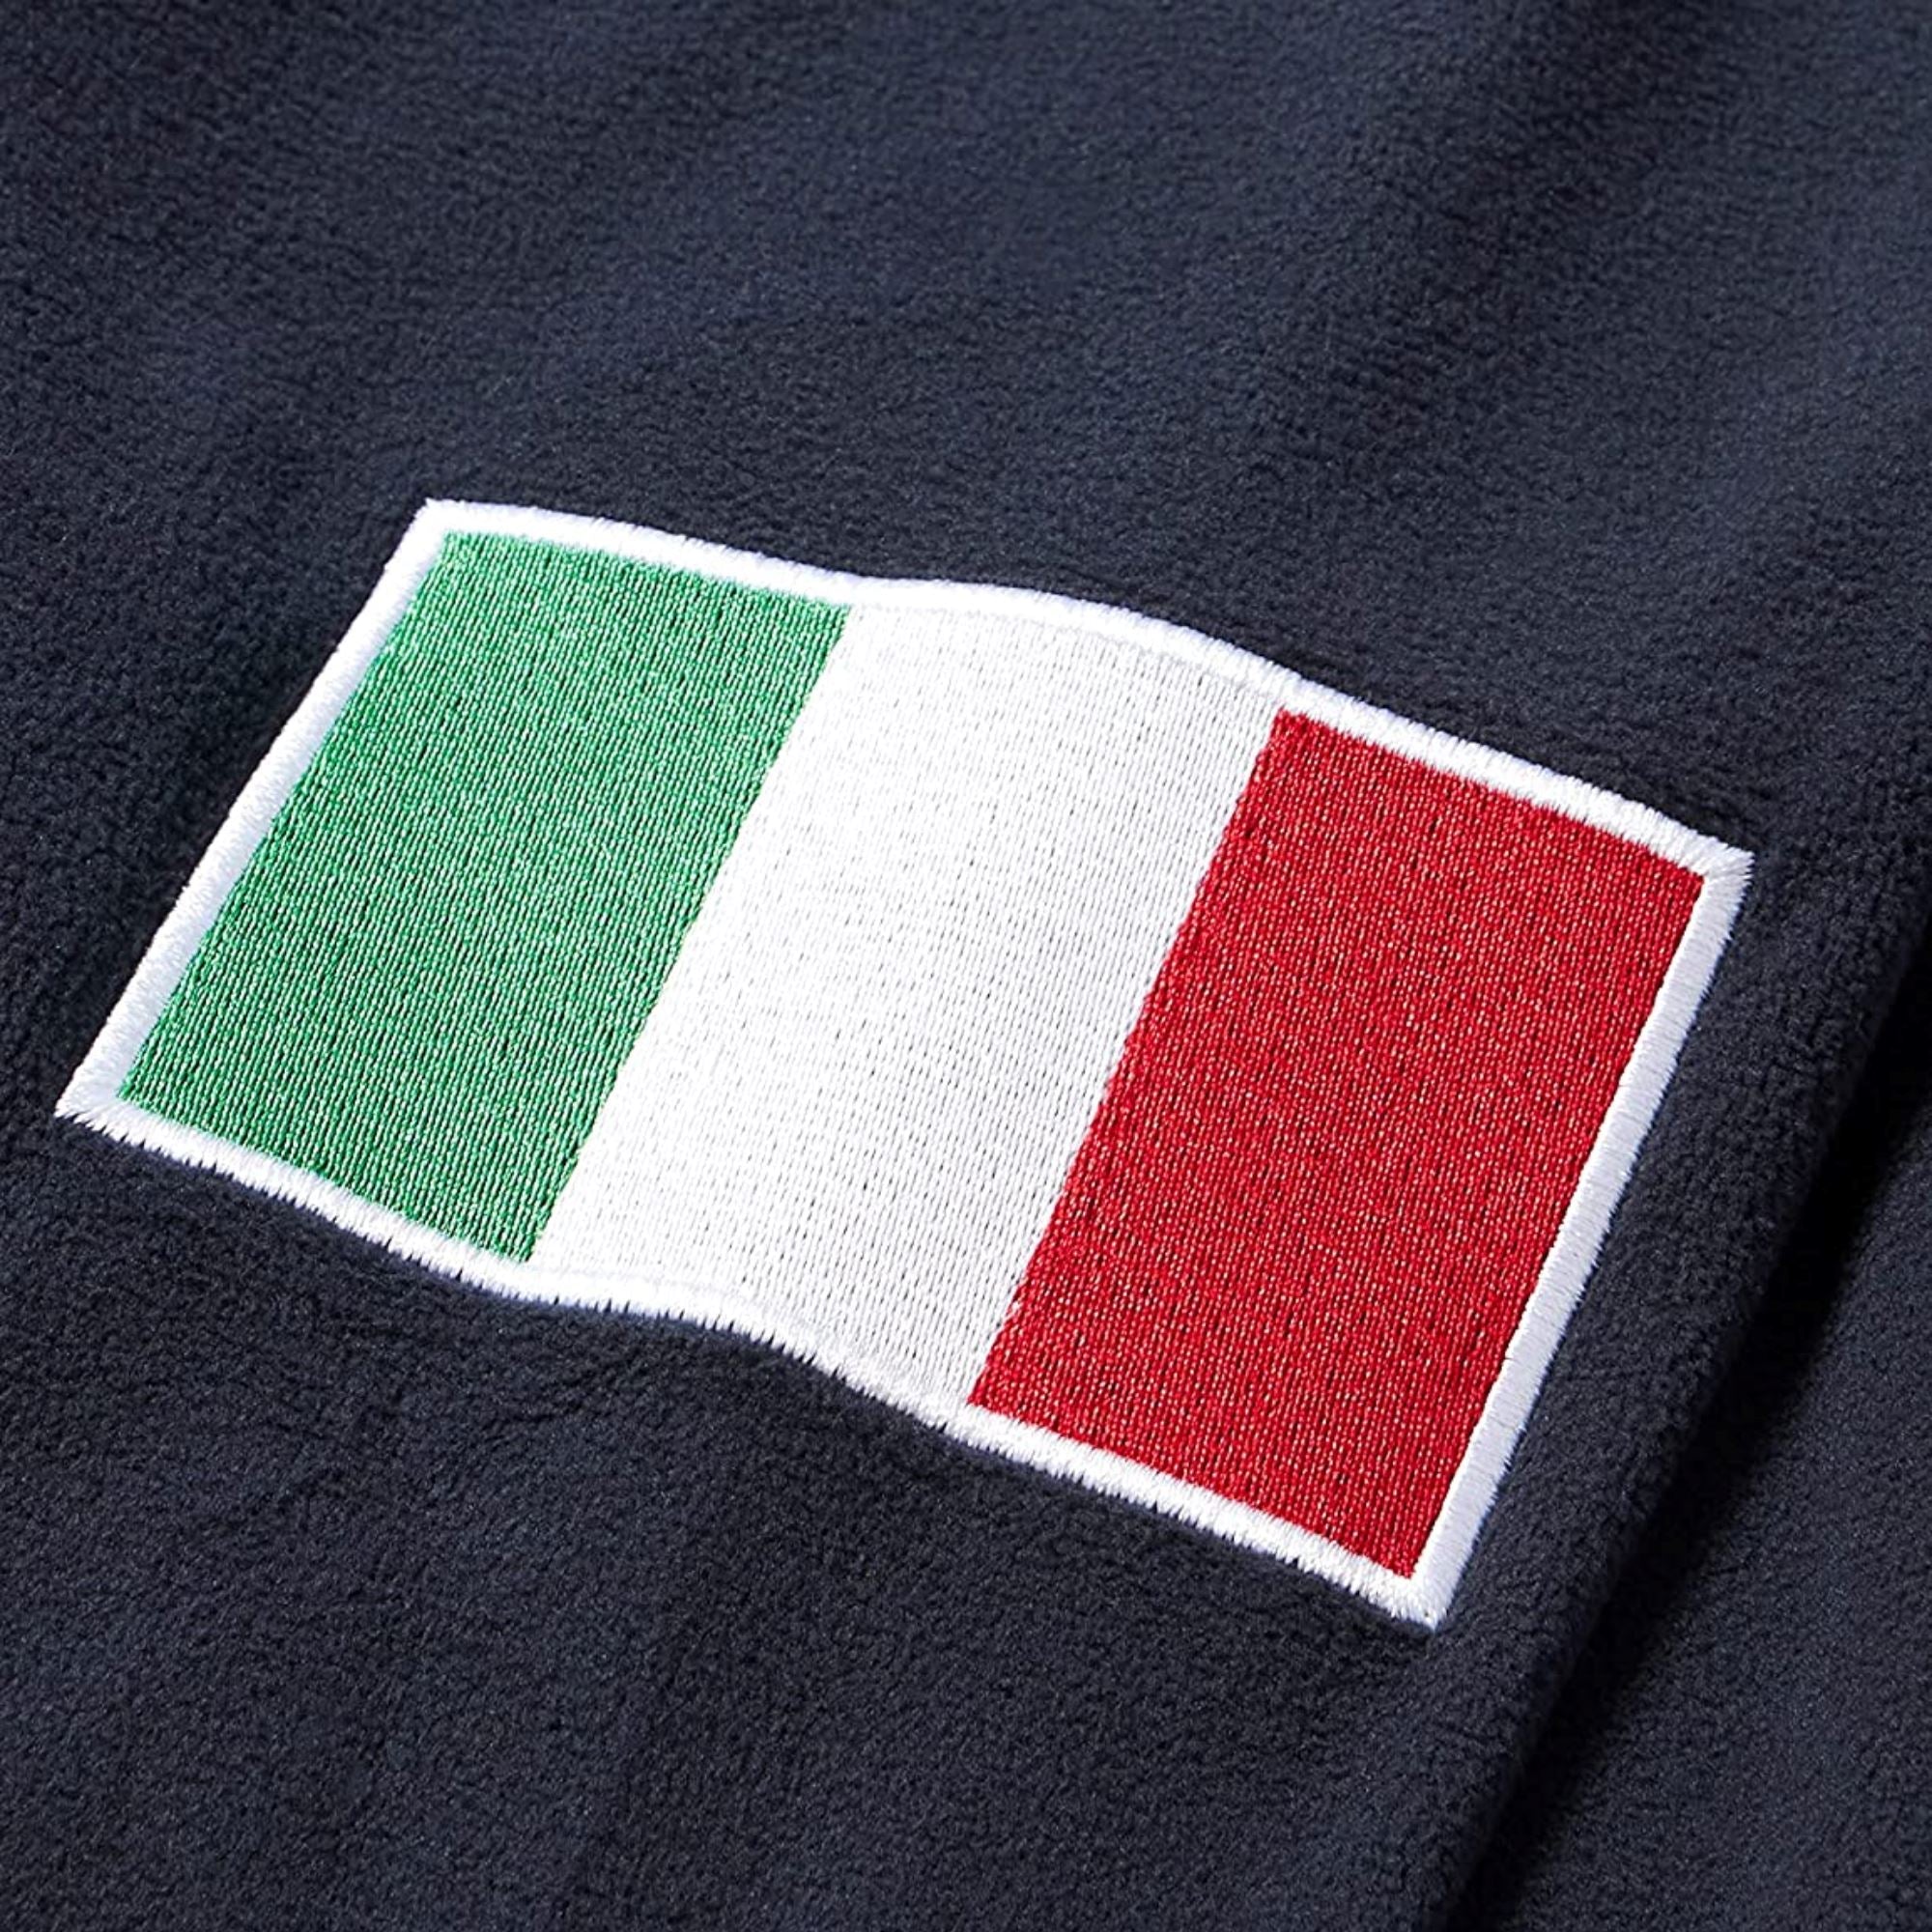 Kappa Italia Unisex Cento Full Zip Jacket Dark Navy - ITASPORT